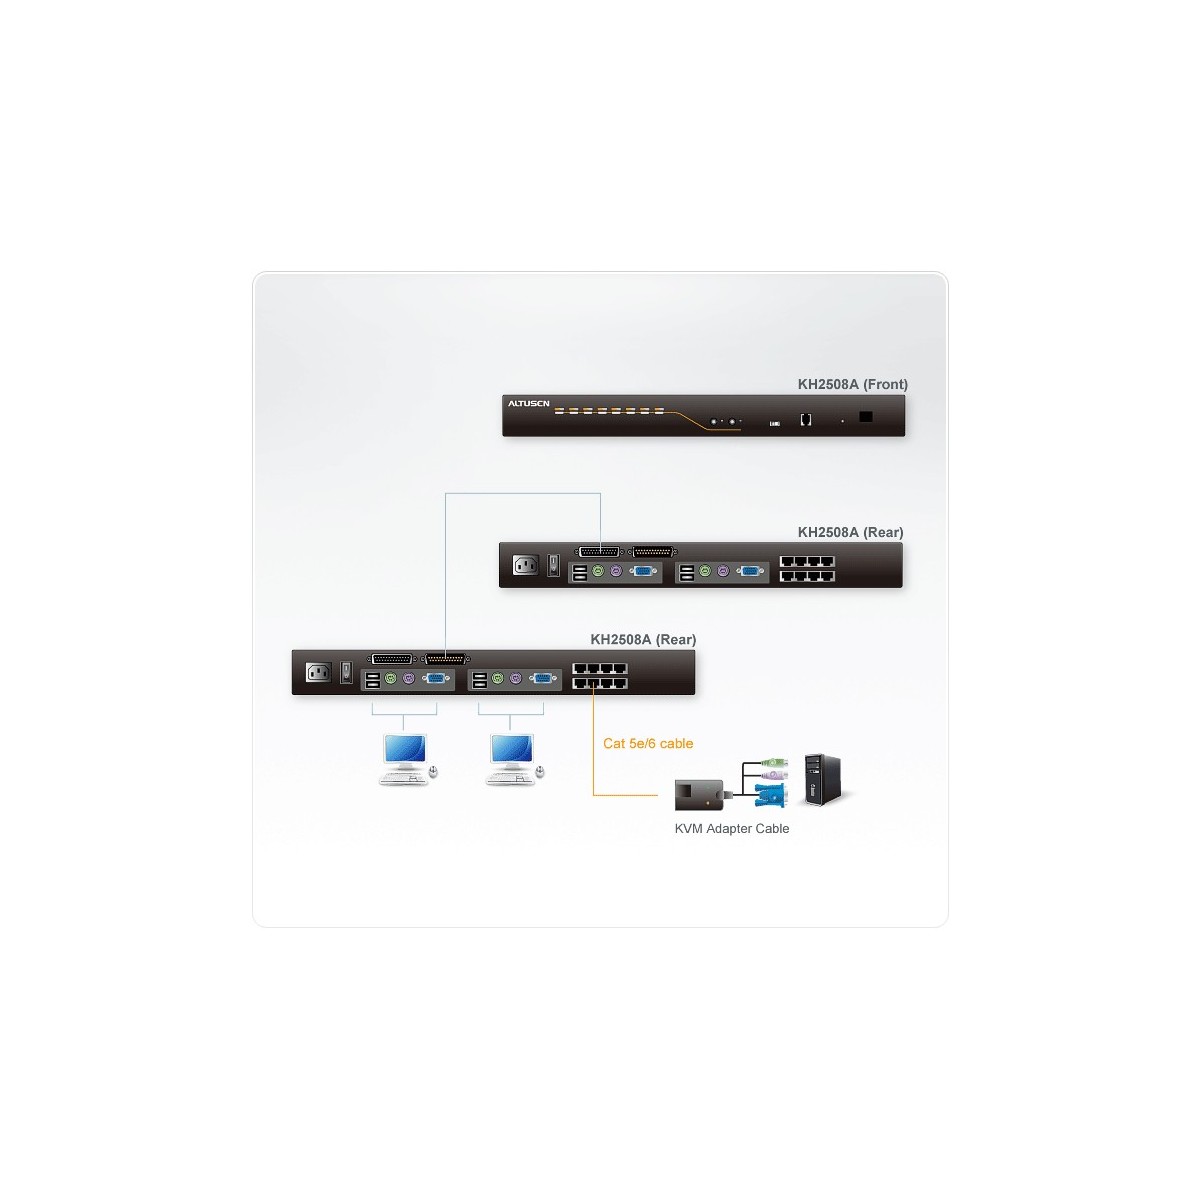 ATEN ALTUSEN KH2508A 8-port KVM console - Parallel, PS/2 Parallel, PS/2, RJ-11, RJ-45